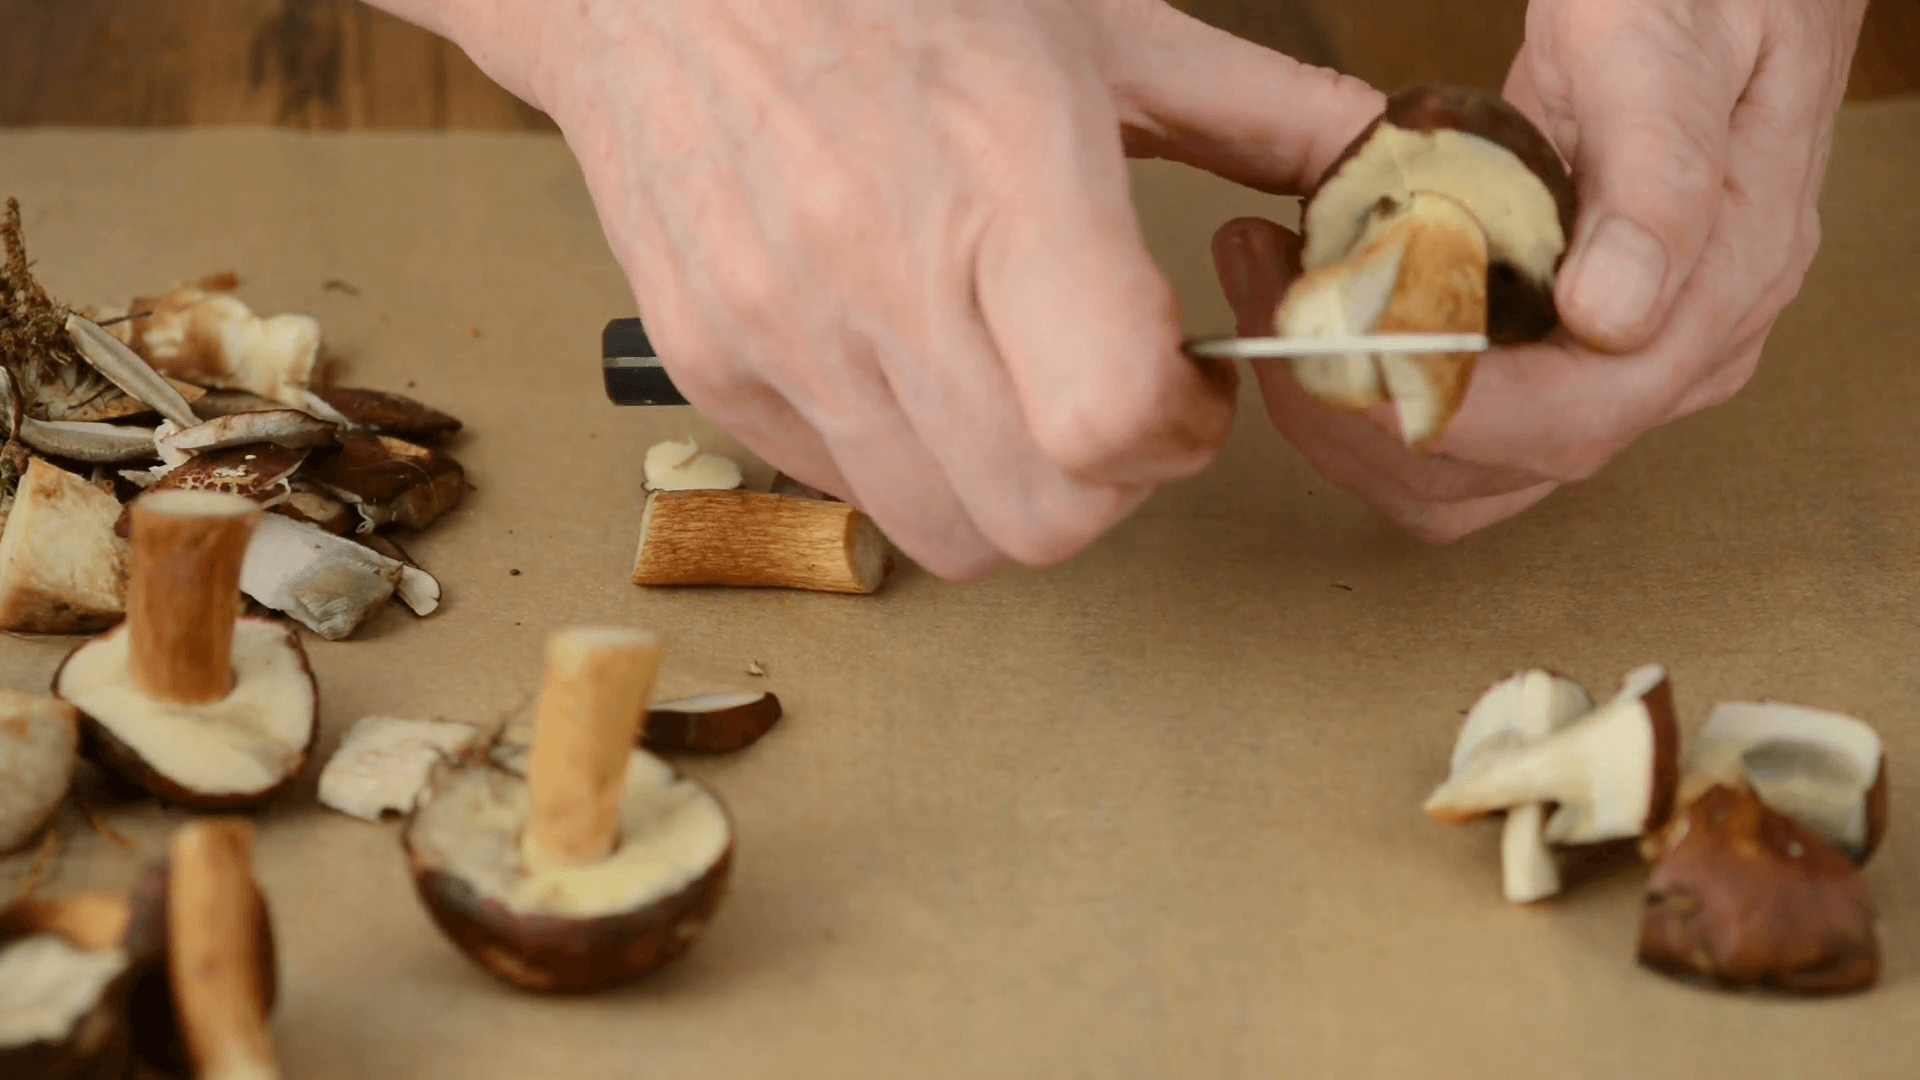 Польский гриб (моховик каштановый): фото и описание деликатеса